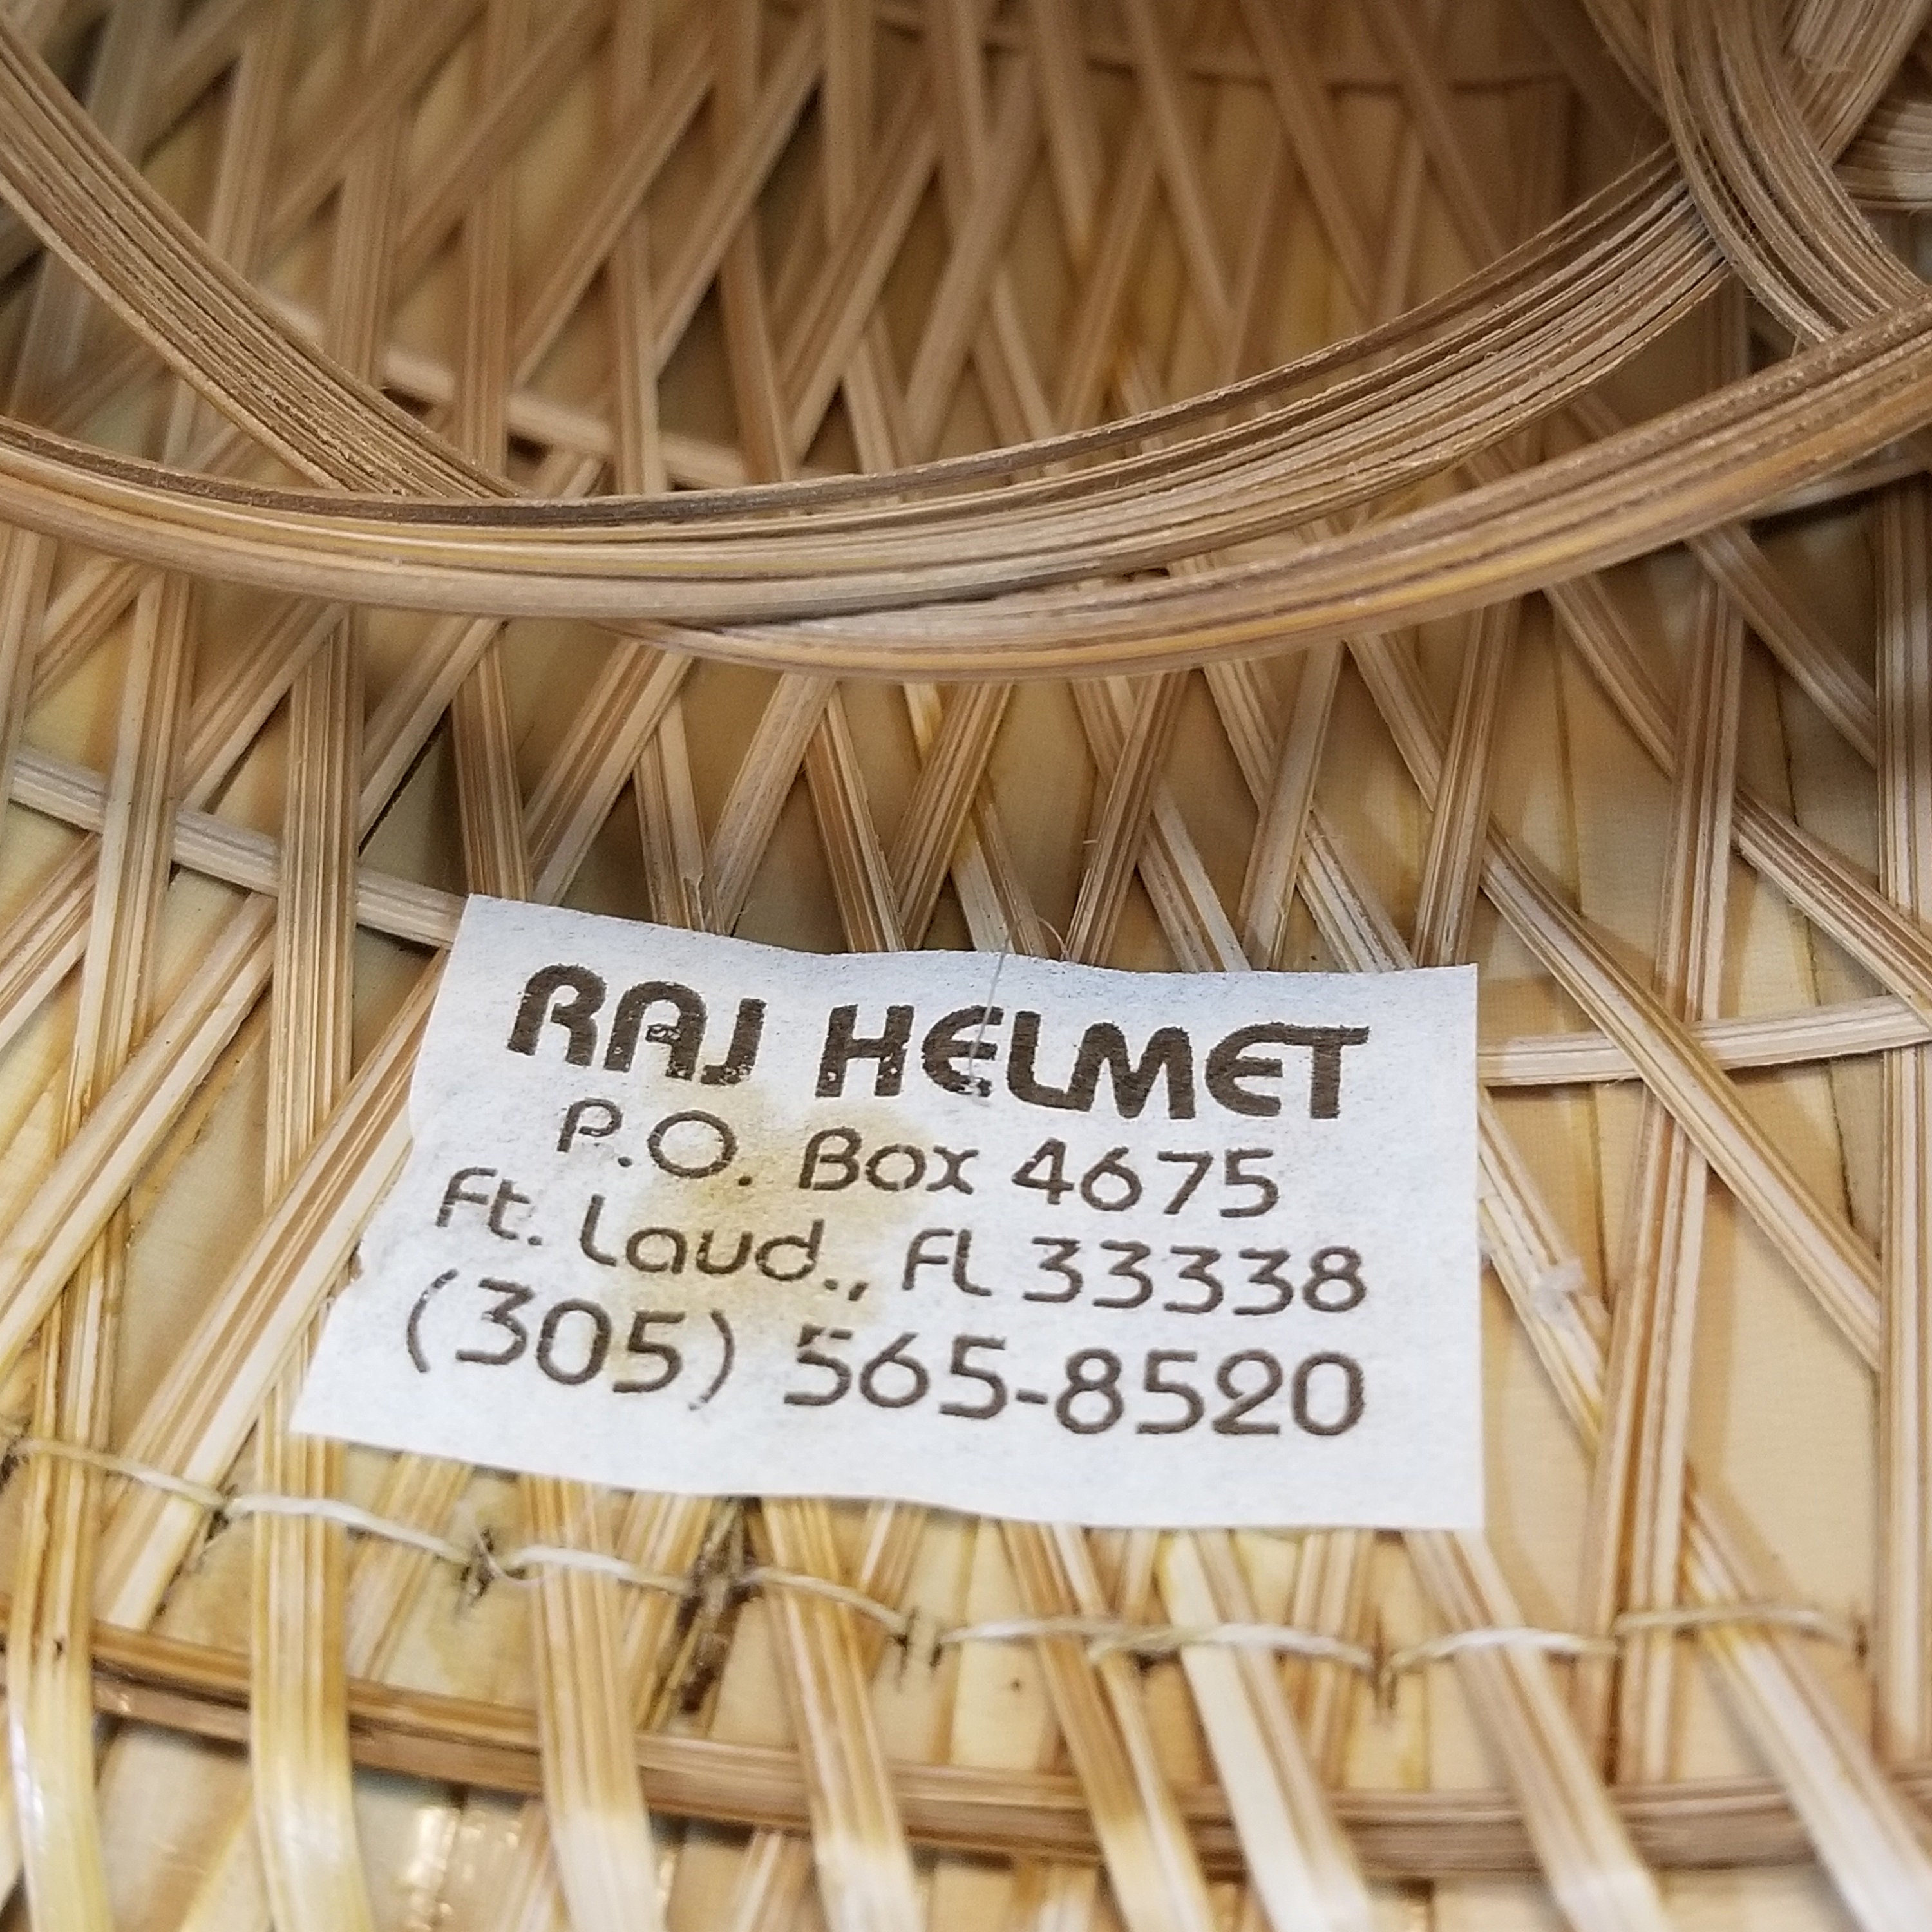 Bamboo and Fabric Raj Helmet, Safari Style Helmet , Jumanji Safari ...